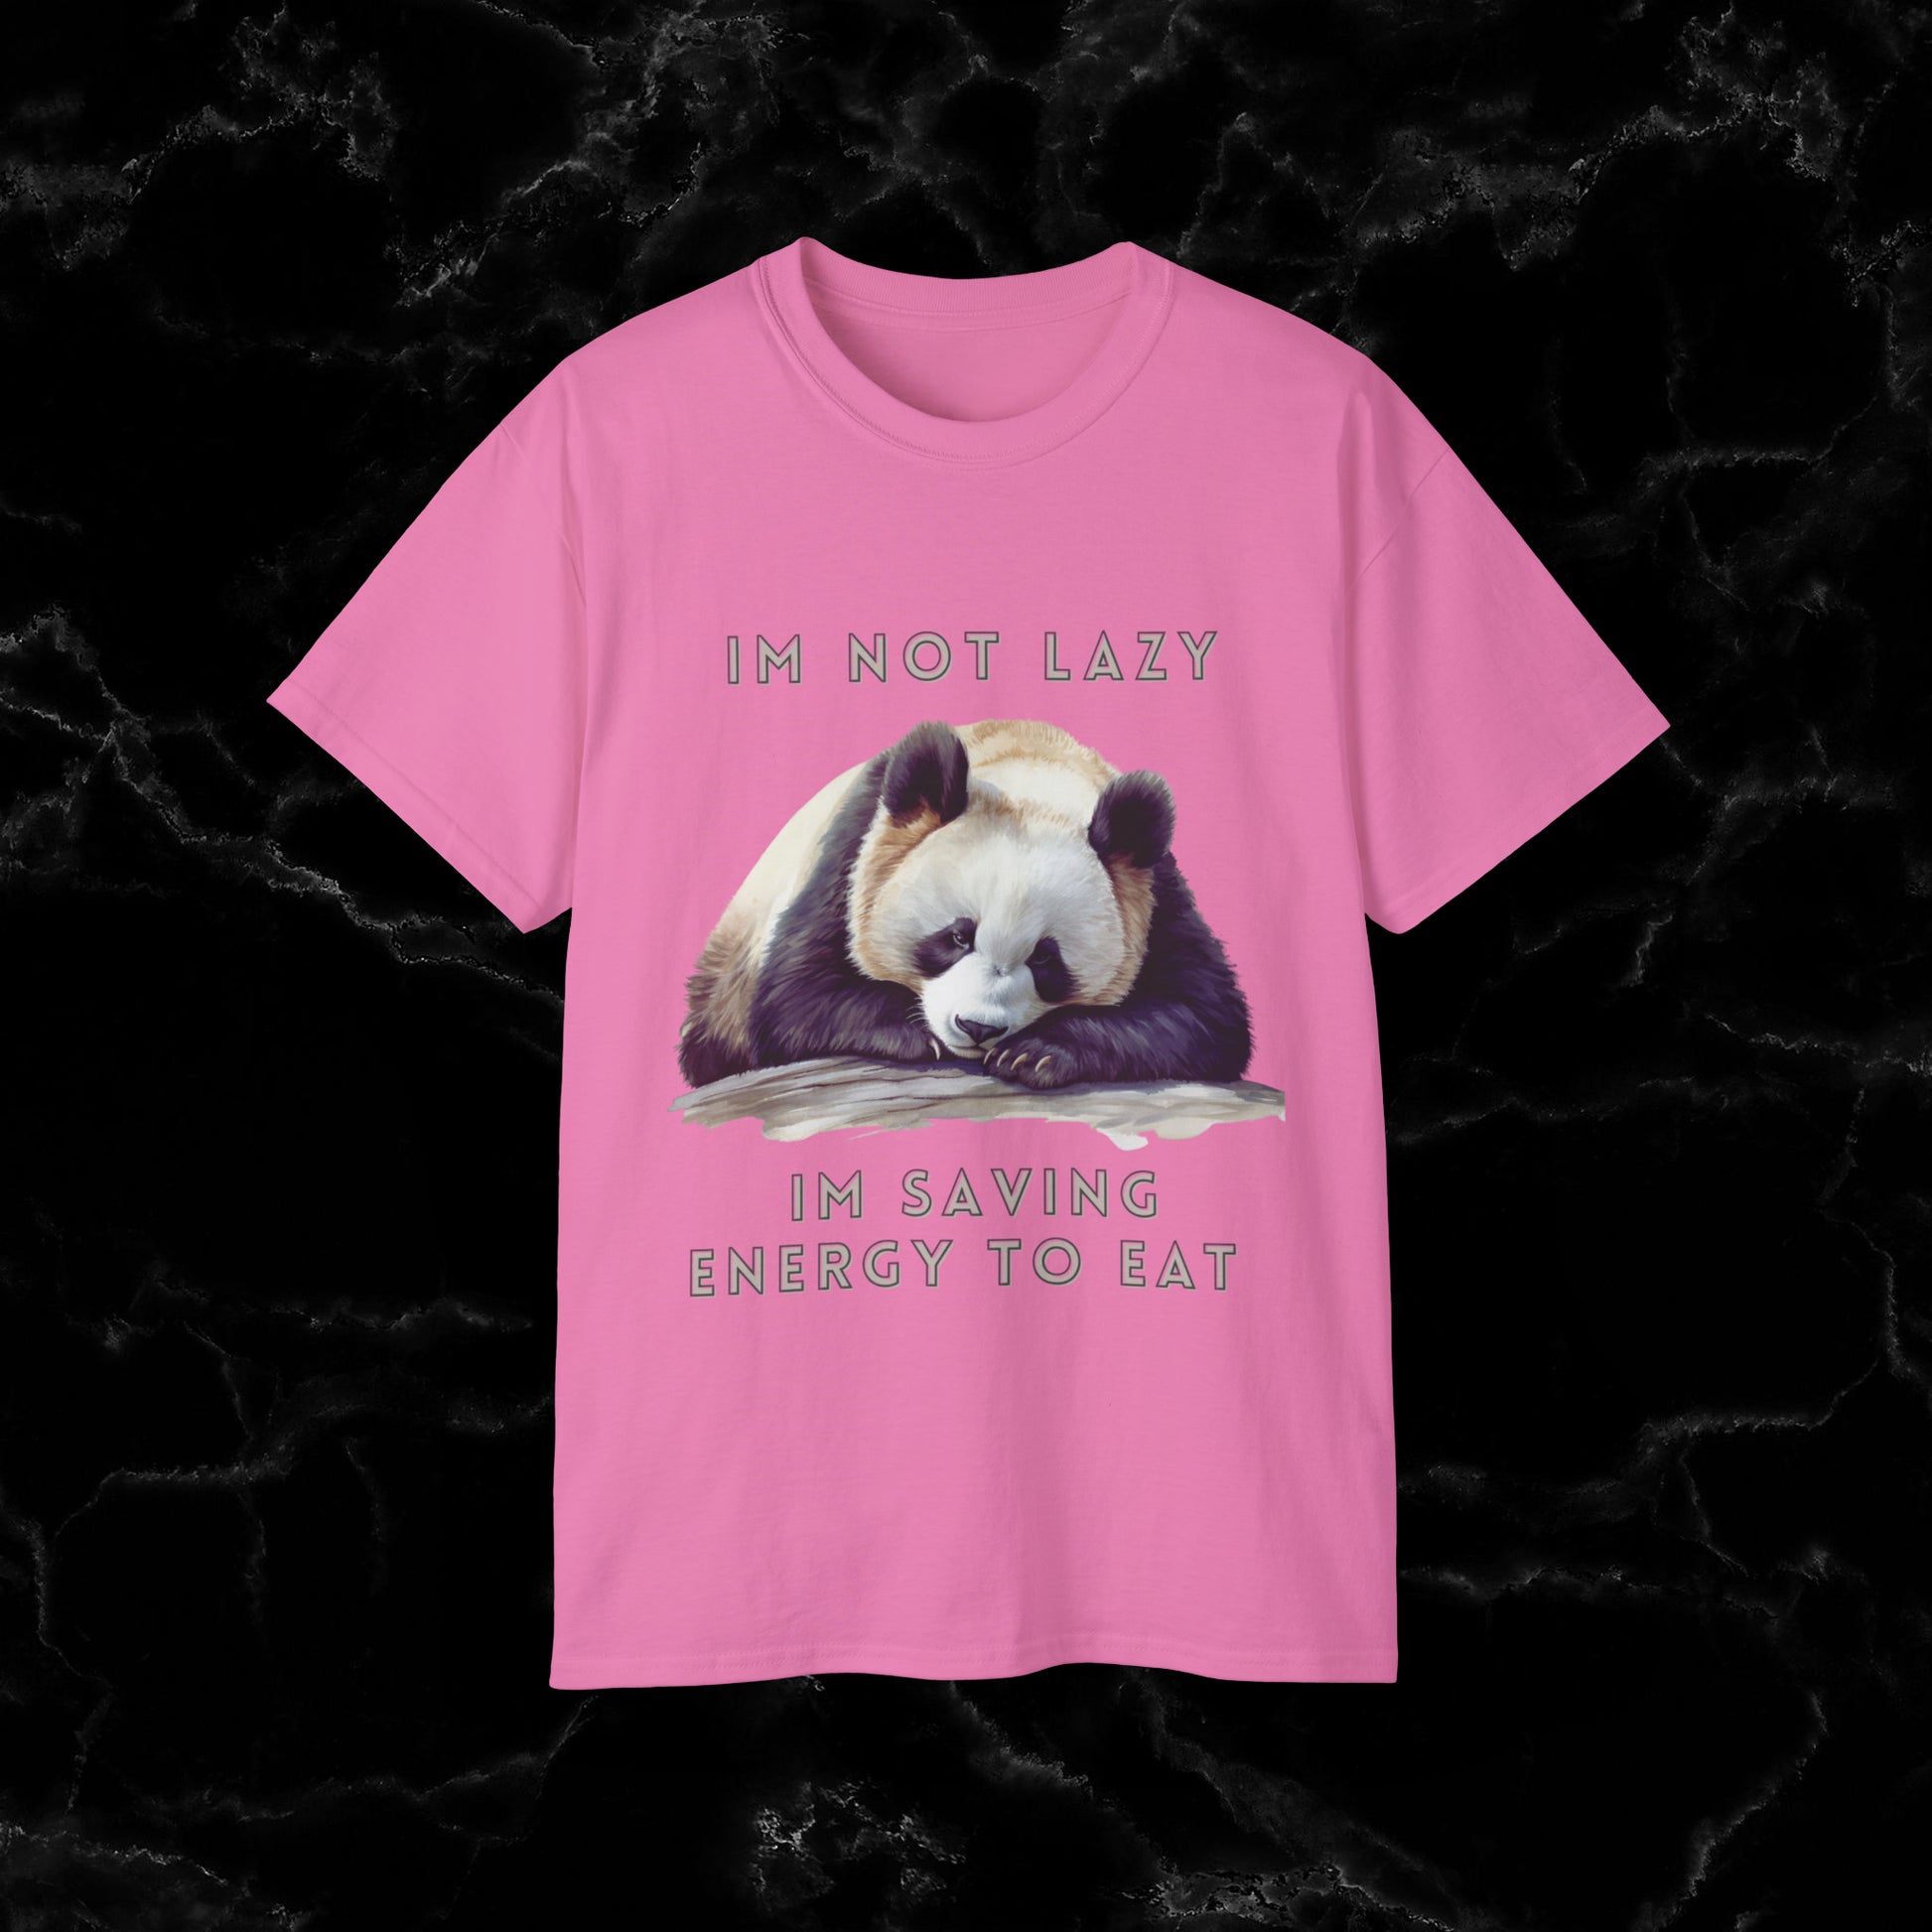 Nap Time Panda Unisex Funny Tee - Hilarious Panda Nap Design - I'm Not Lazy, I'm Saving Energy to Eat T-Shirt Azalea S 